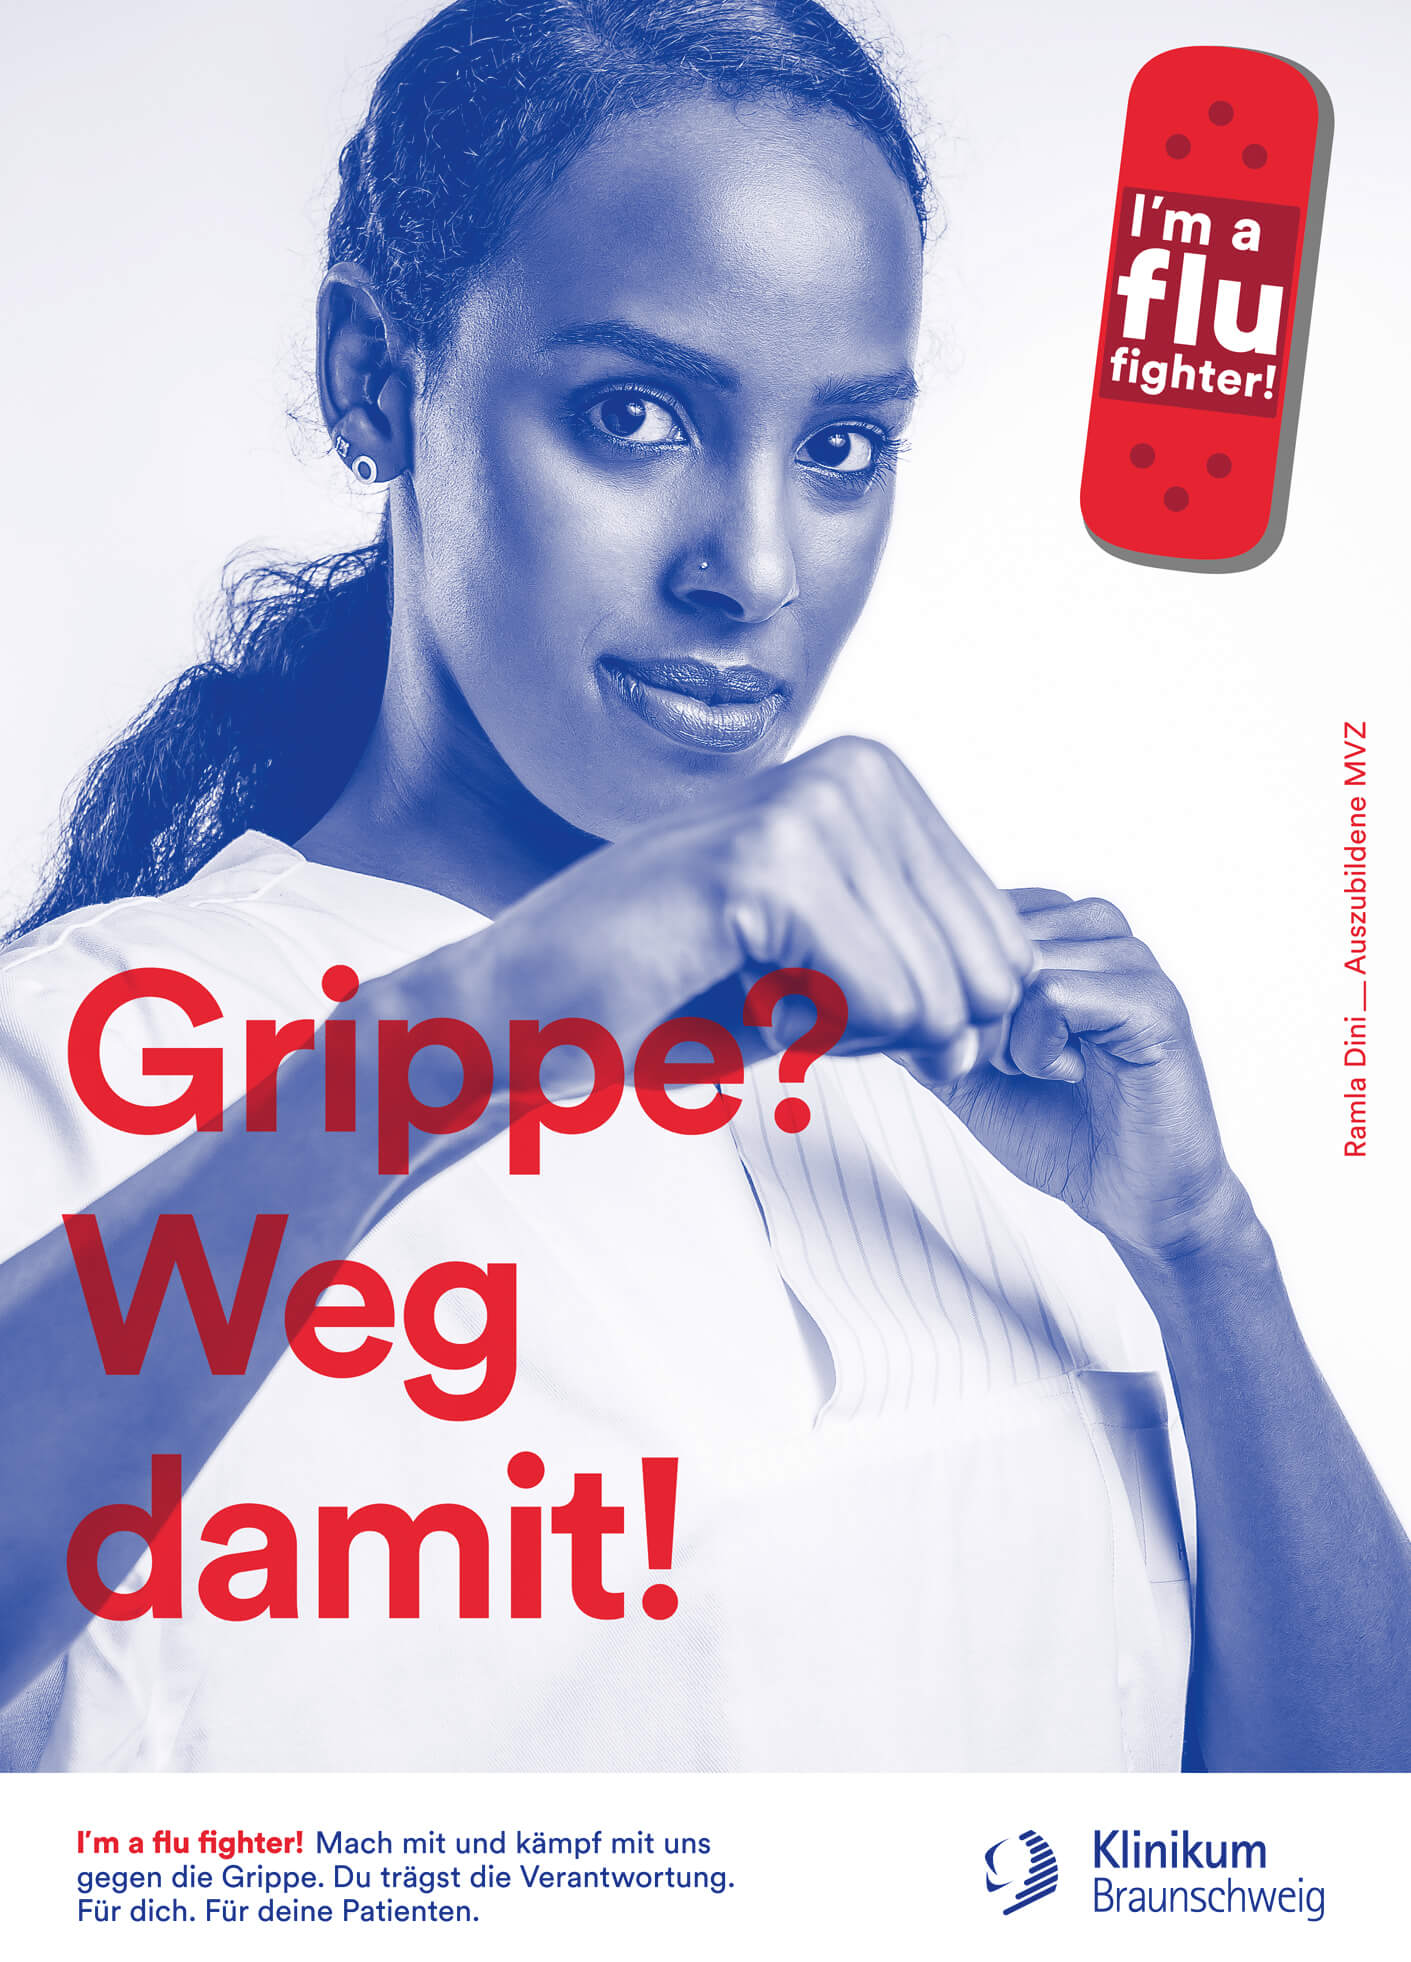 cyclos klinikum braunschweig kampagne flu fighter plakat marketing werbeagentur